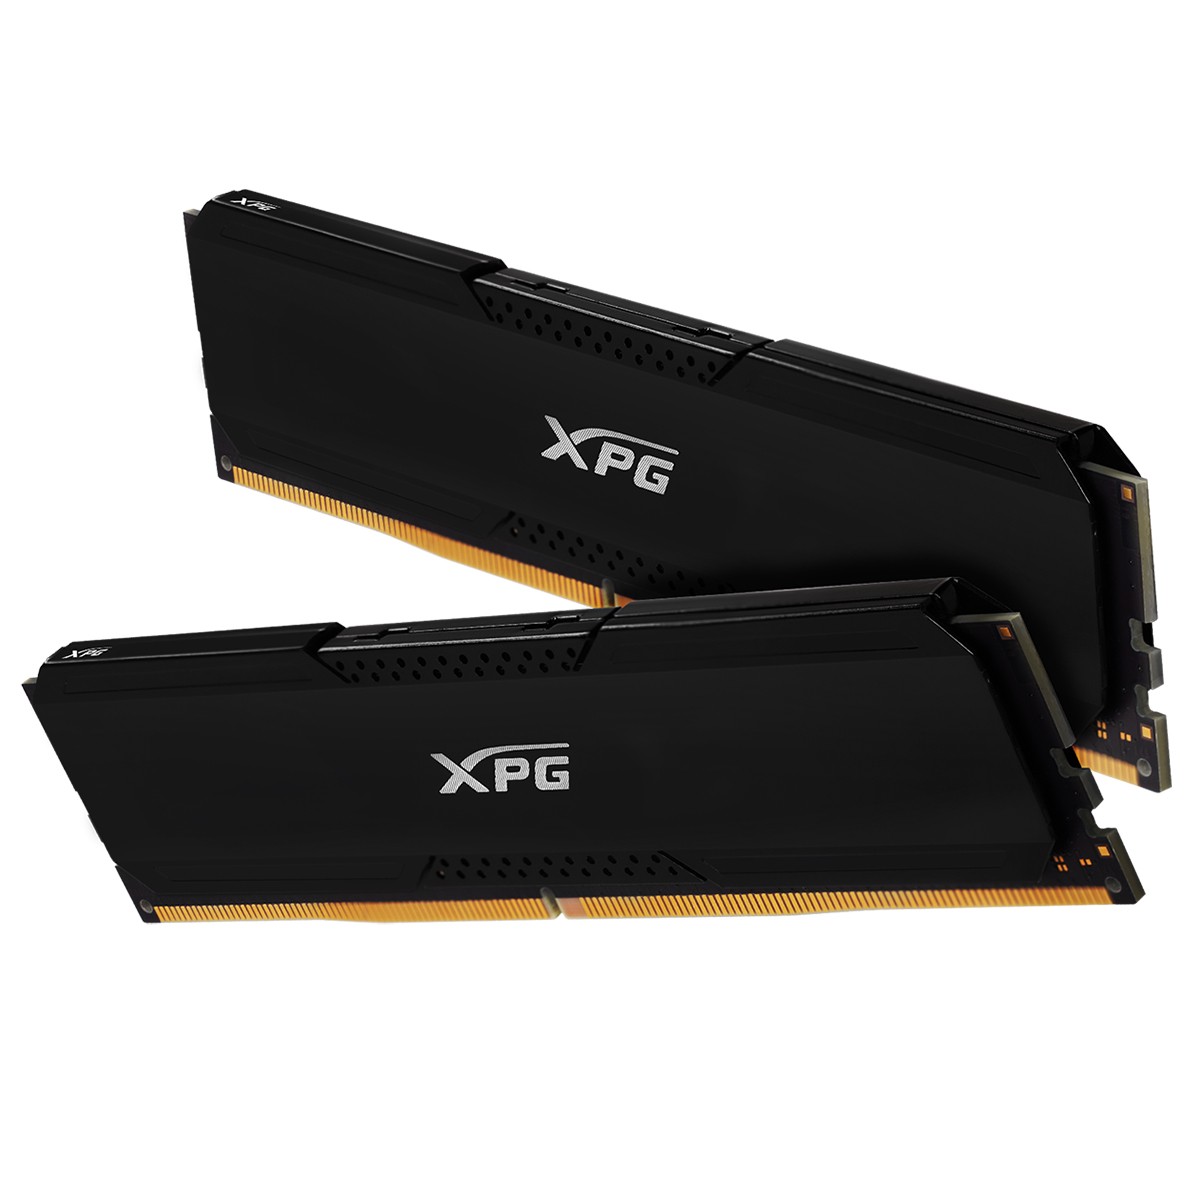 Memória DDR4 XPG Gammix D20, 32GB (2x16GB), 3200Mhz, CL16, Black, AX4U320016G16A-DCBK20